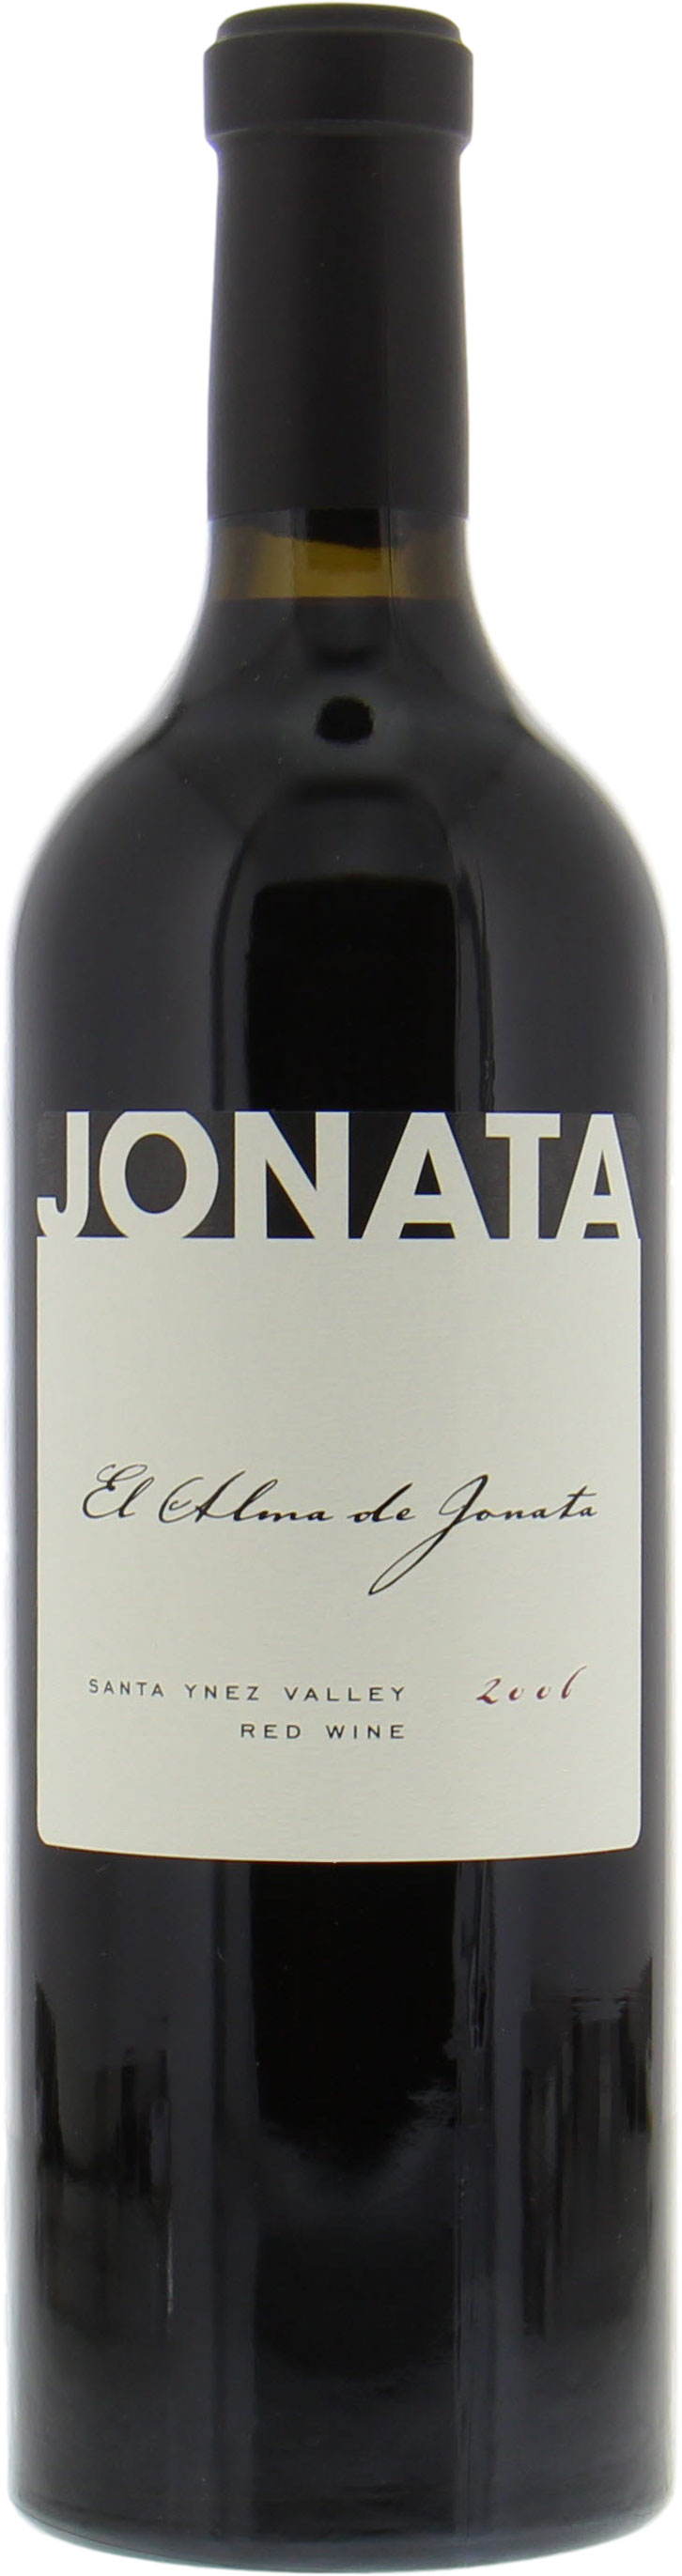 Jonata - El Alma de Jonata 2006 Perfect